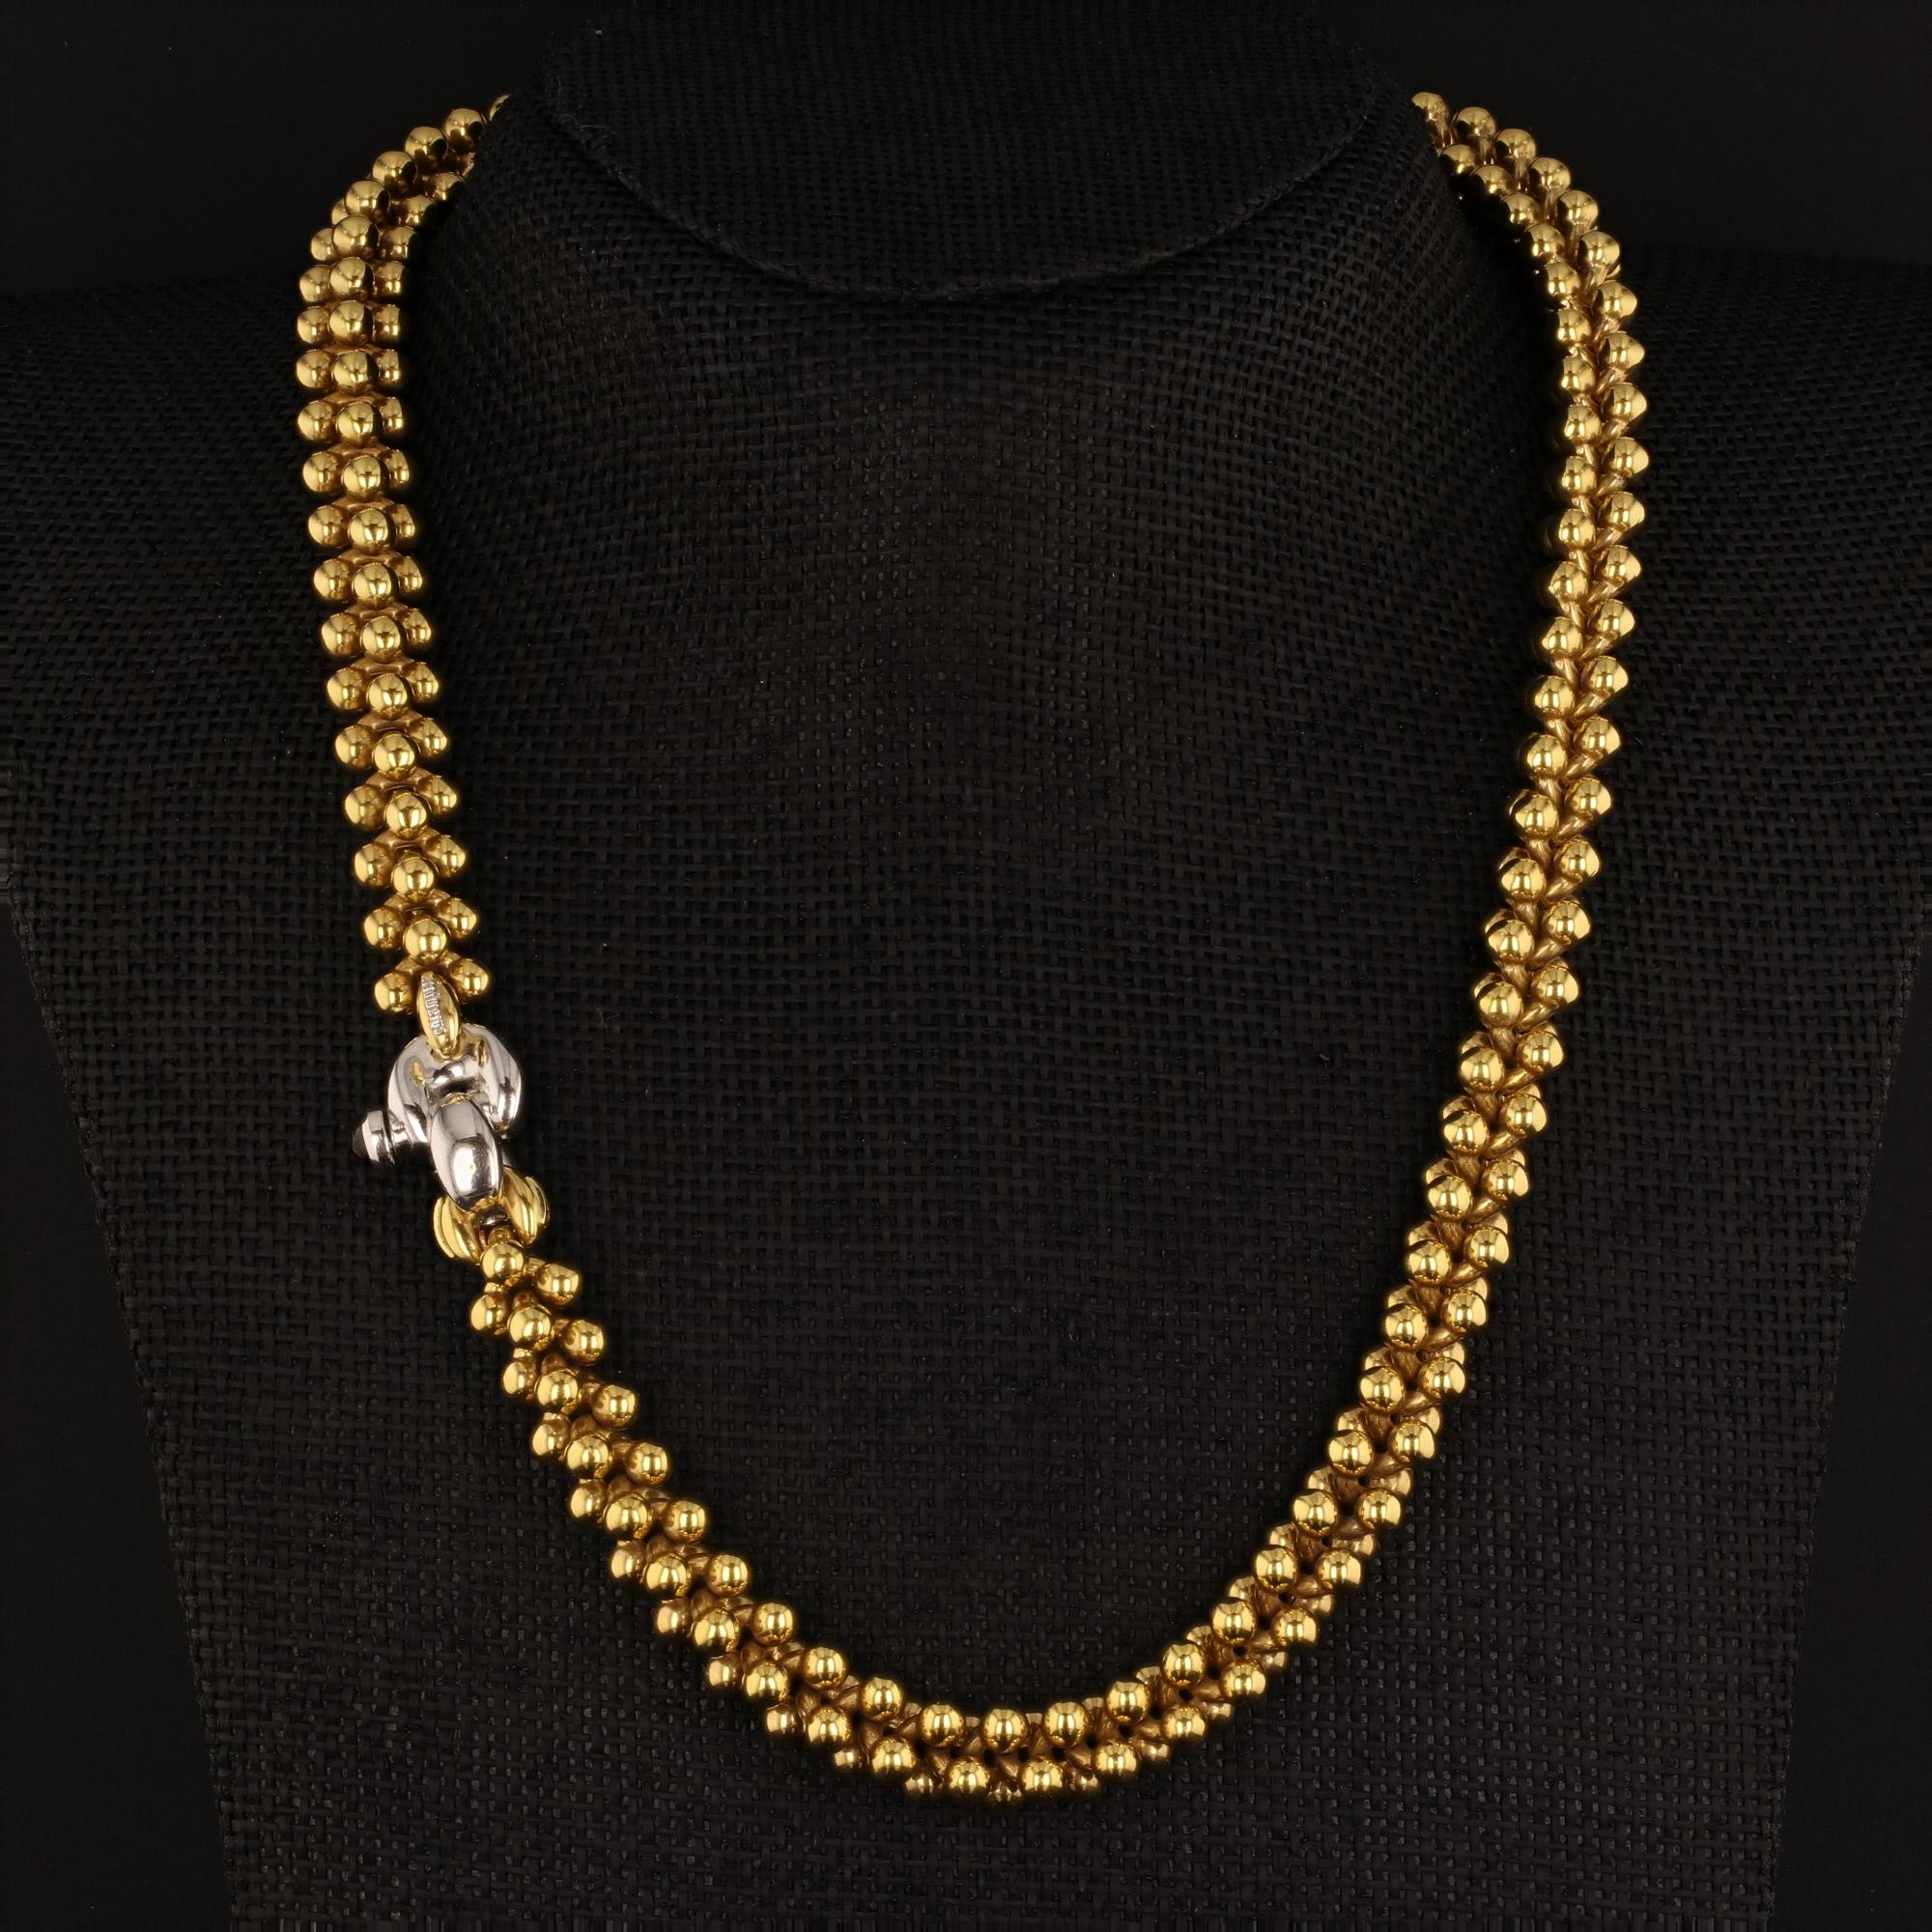 Ce collier à maillons en or jaune 18 carats est de fabrication italienne et signé Chiampesan. Il est proposé par Alex & Co. Ce collier unique est conçu avec des maillons de perles imbriqués et comporte un fermoir en or blanc 18 carats avec un rubis